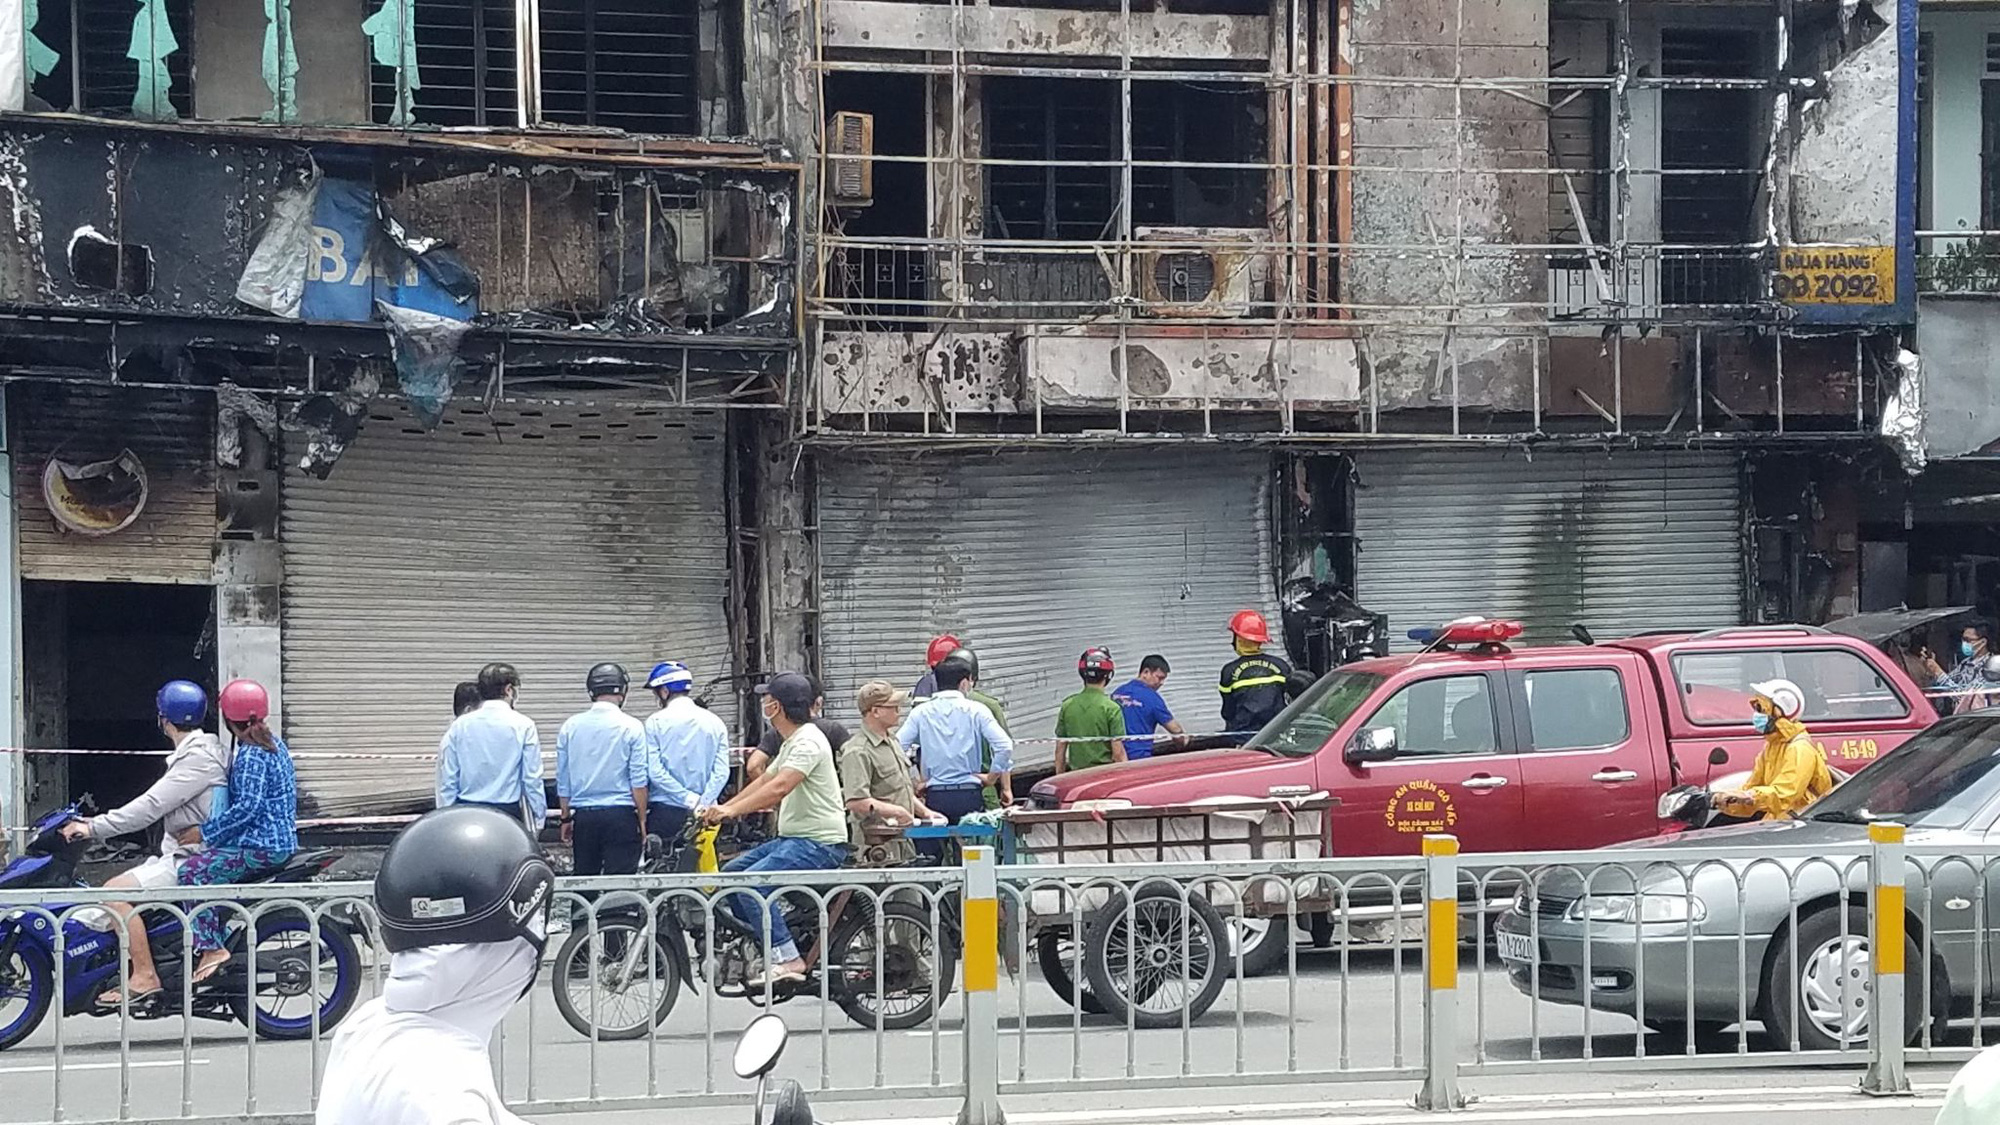 Triệu tập người đàn ông, điều tra nghi án đốt phòng giao dịch Eximbank ở Gò Vấp - Ảnh 1.